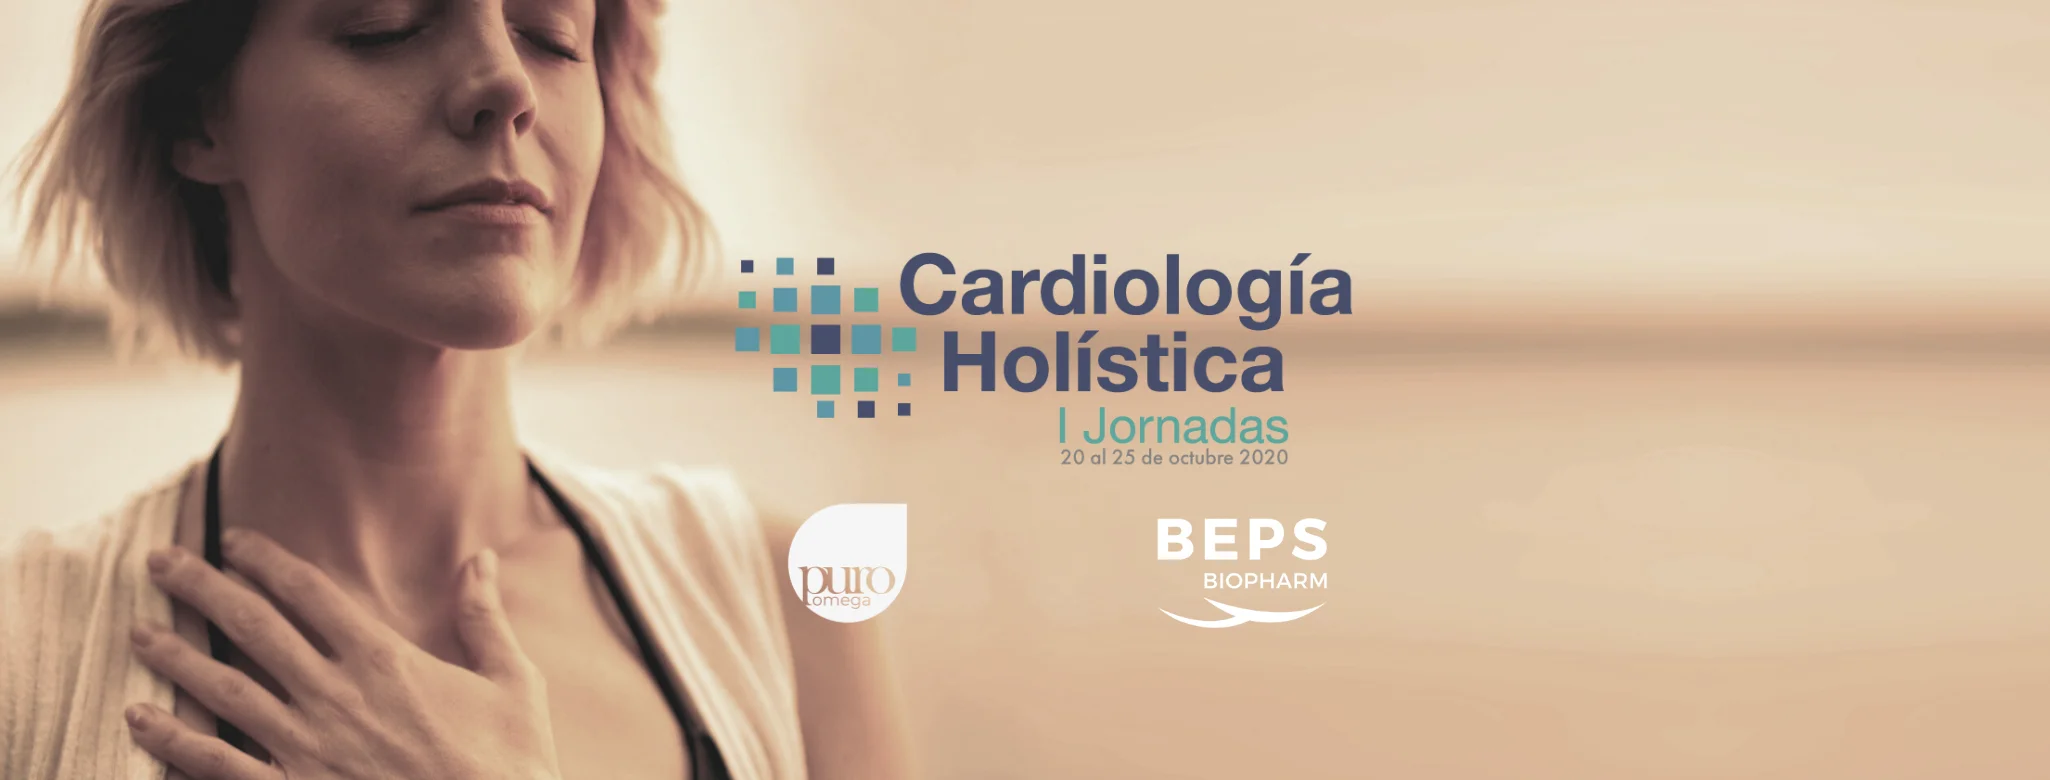 Jornadas de Cardiología Holística